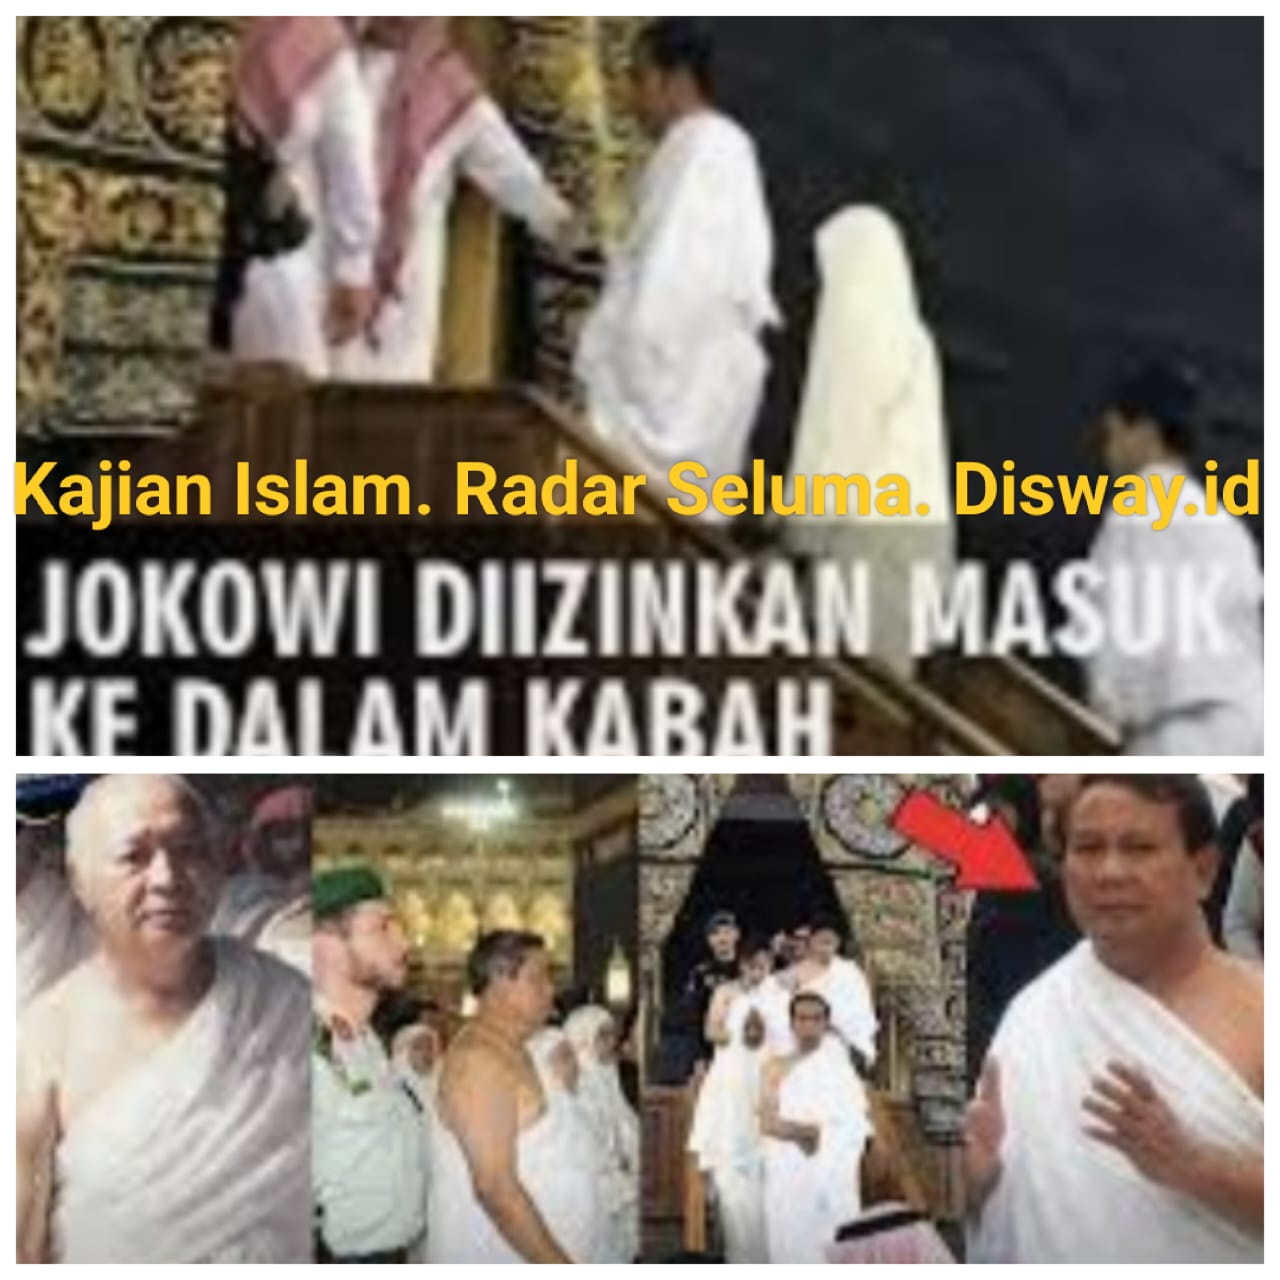 Inilah Tokoh Indonesia Sudah Masuk Dalam Kakbah, Siapa Mereka Berikut Penjelasannya.